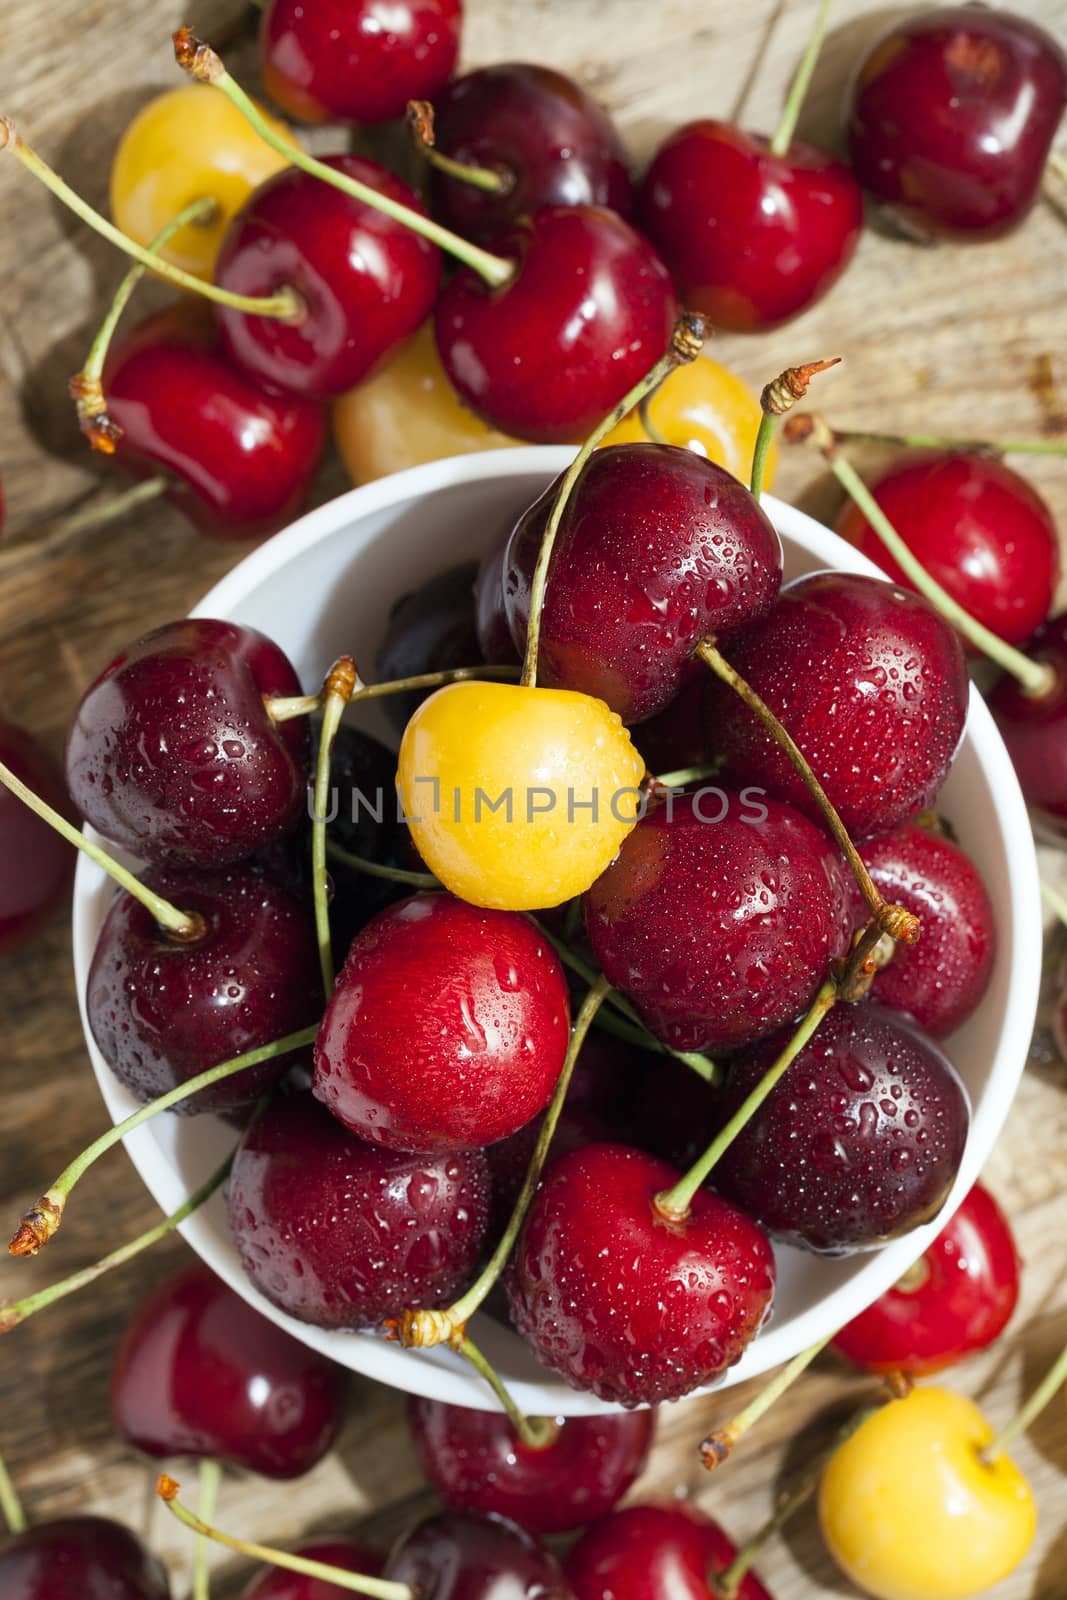 juicy and ripe cherries. by avq